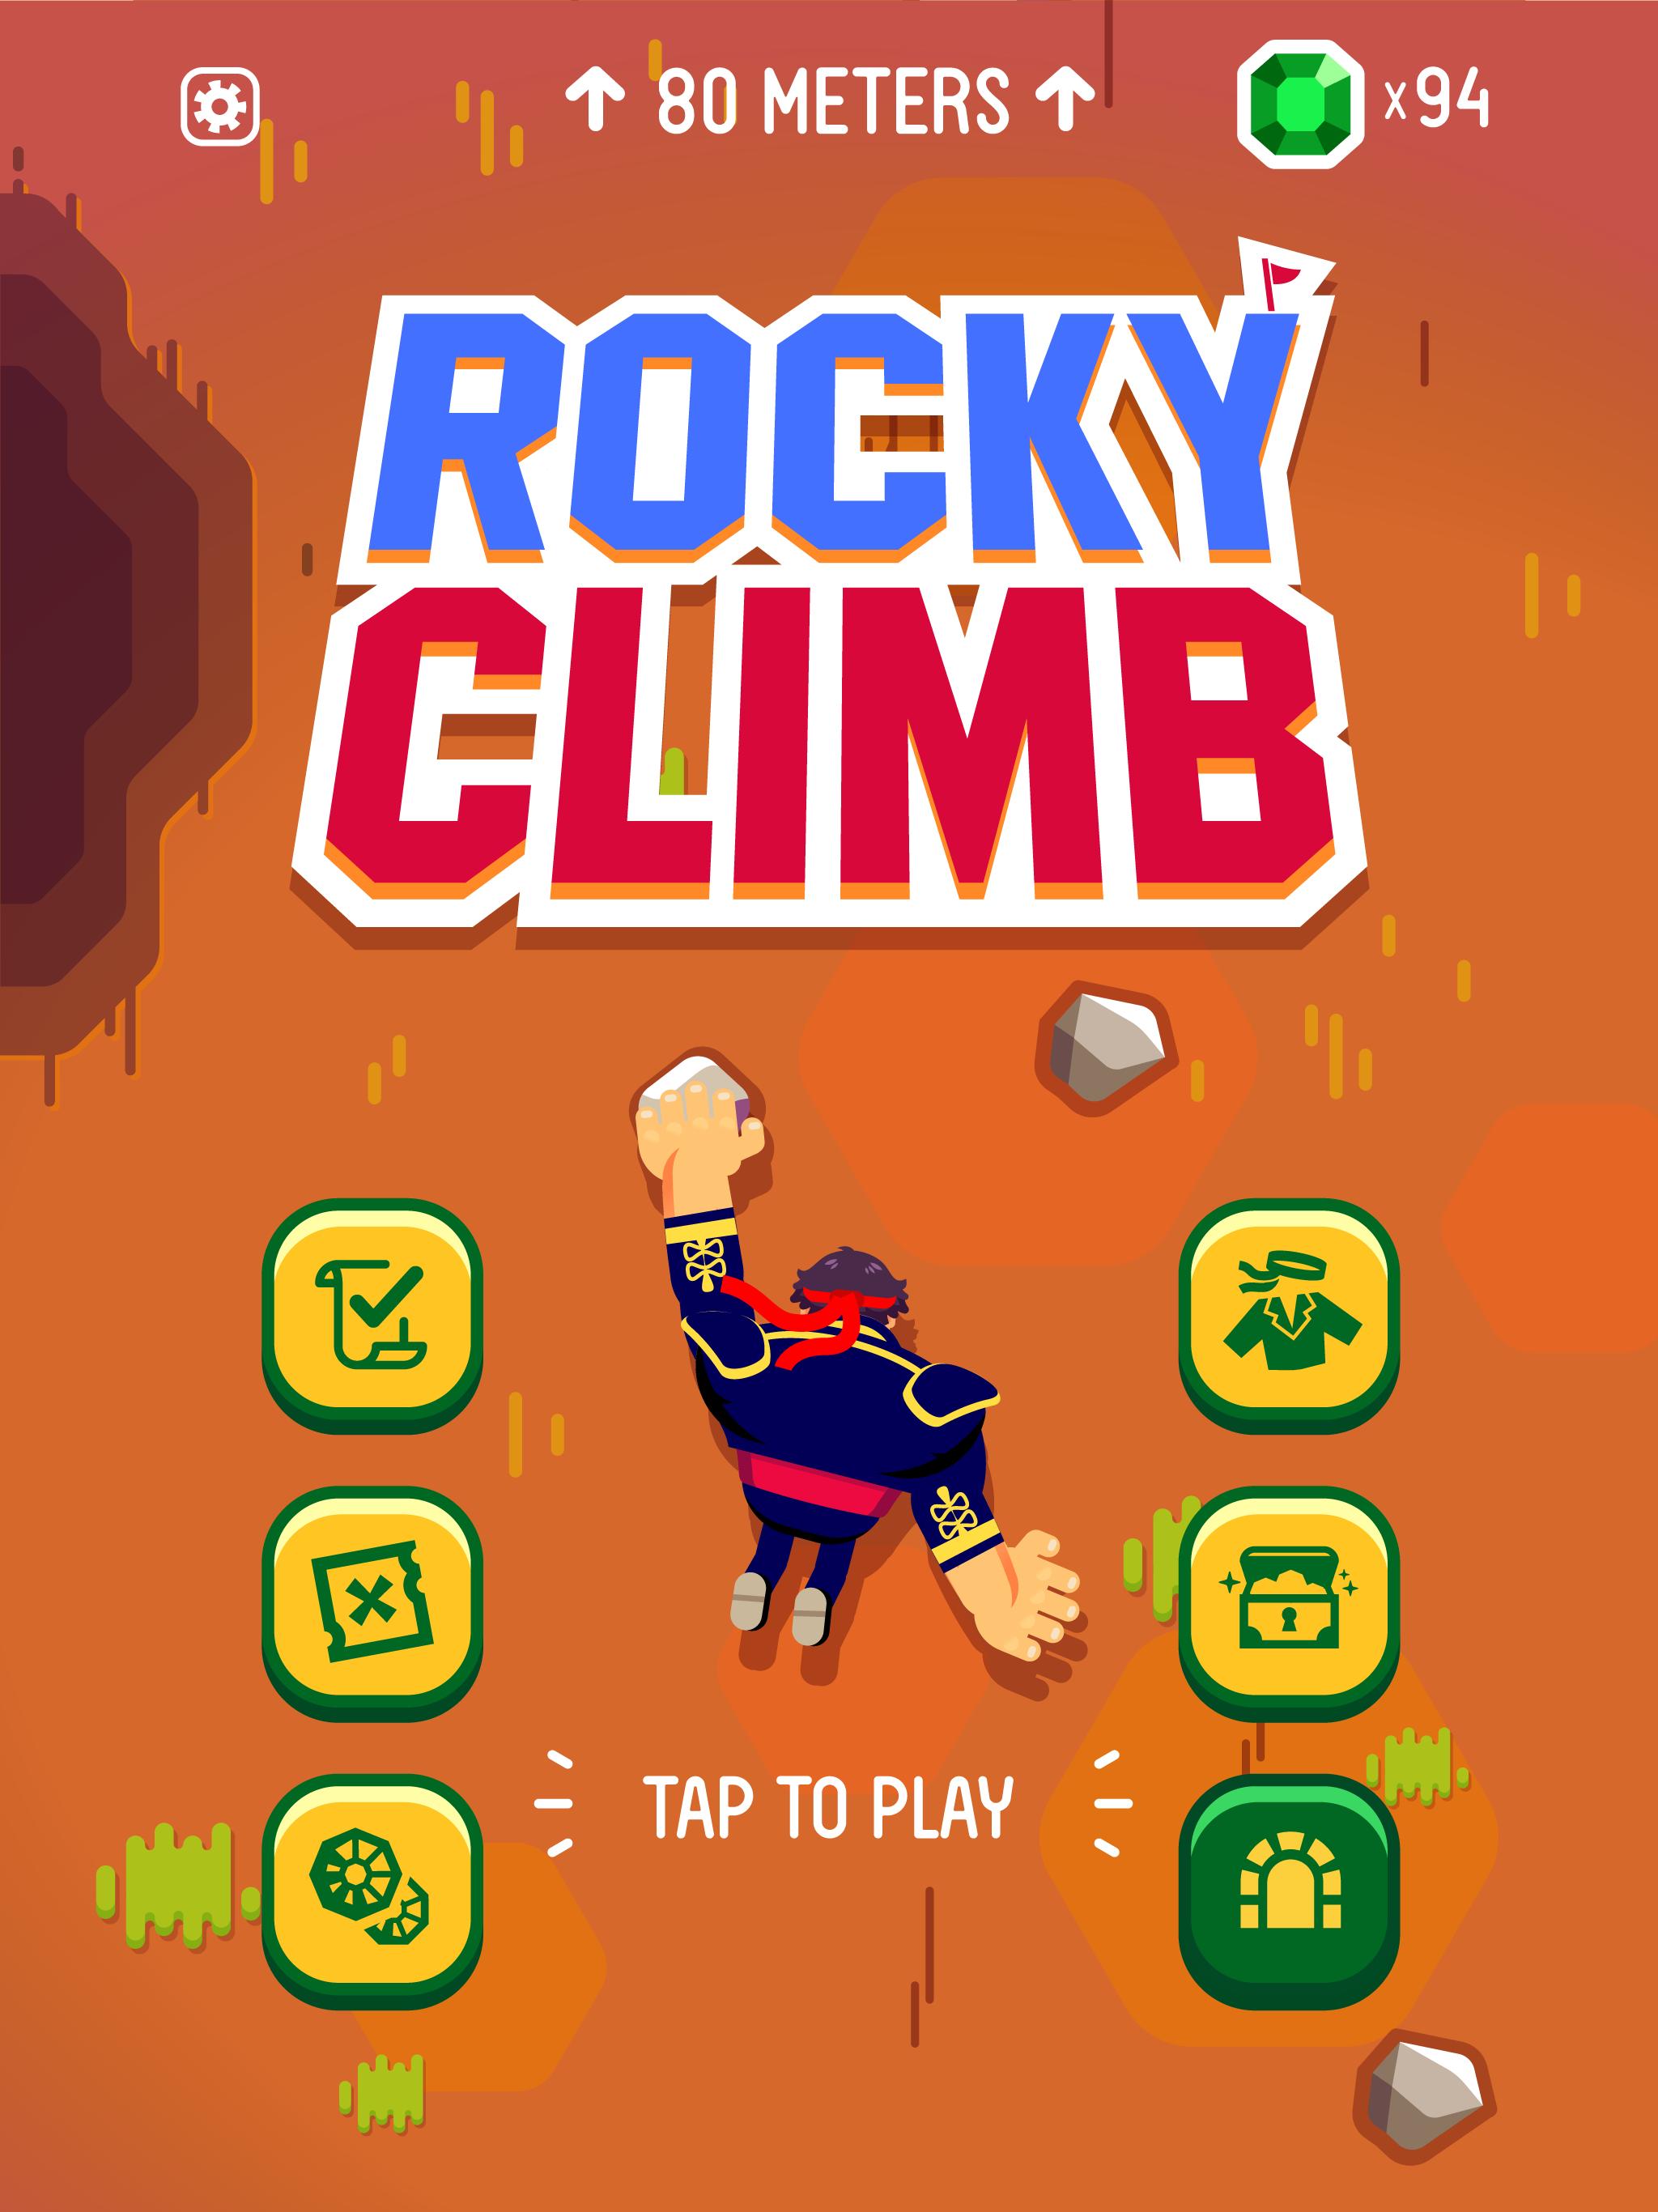 Rocky Climb